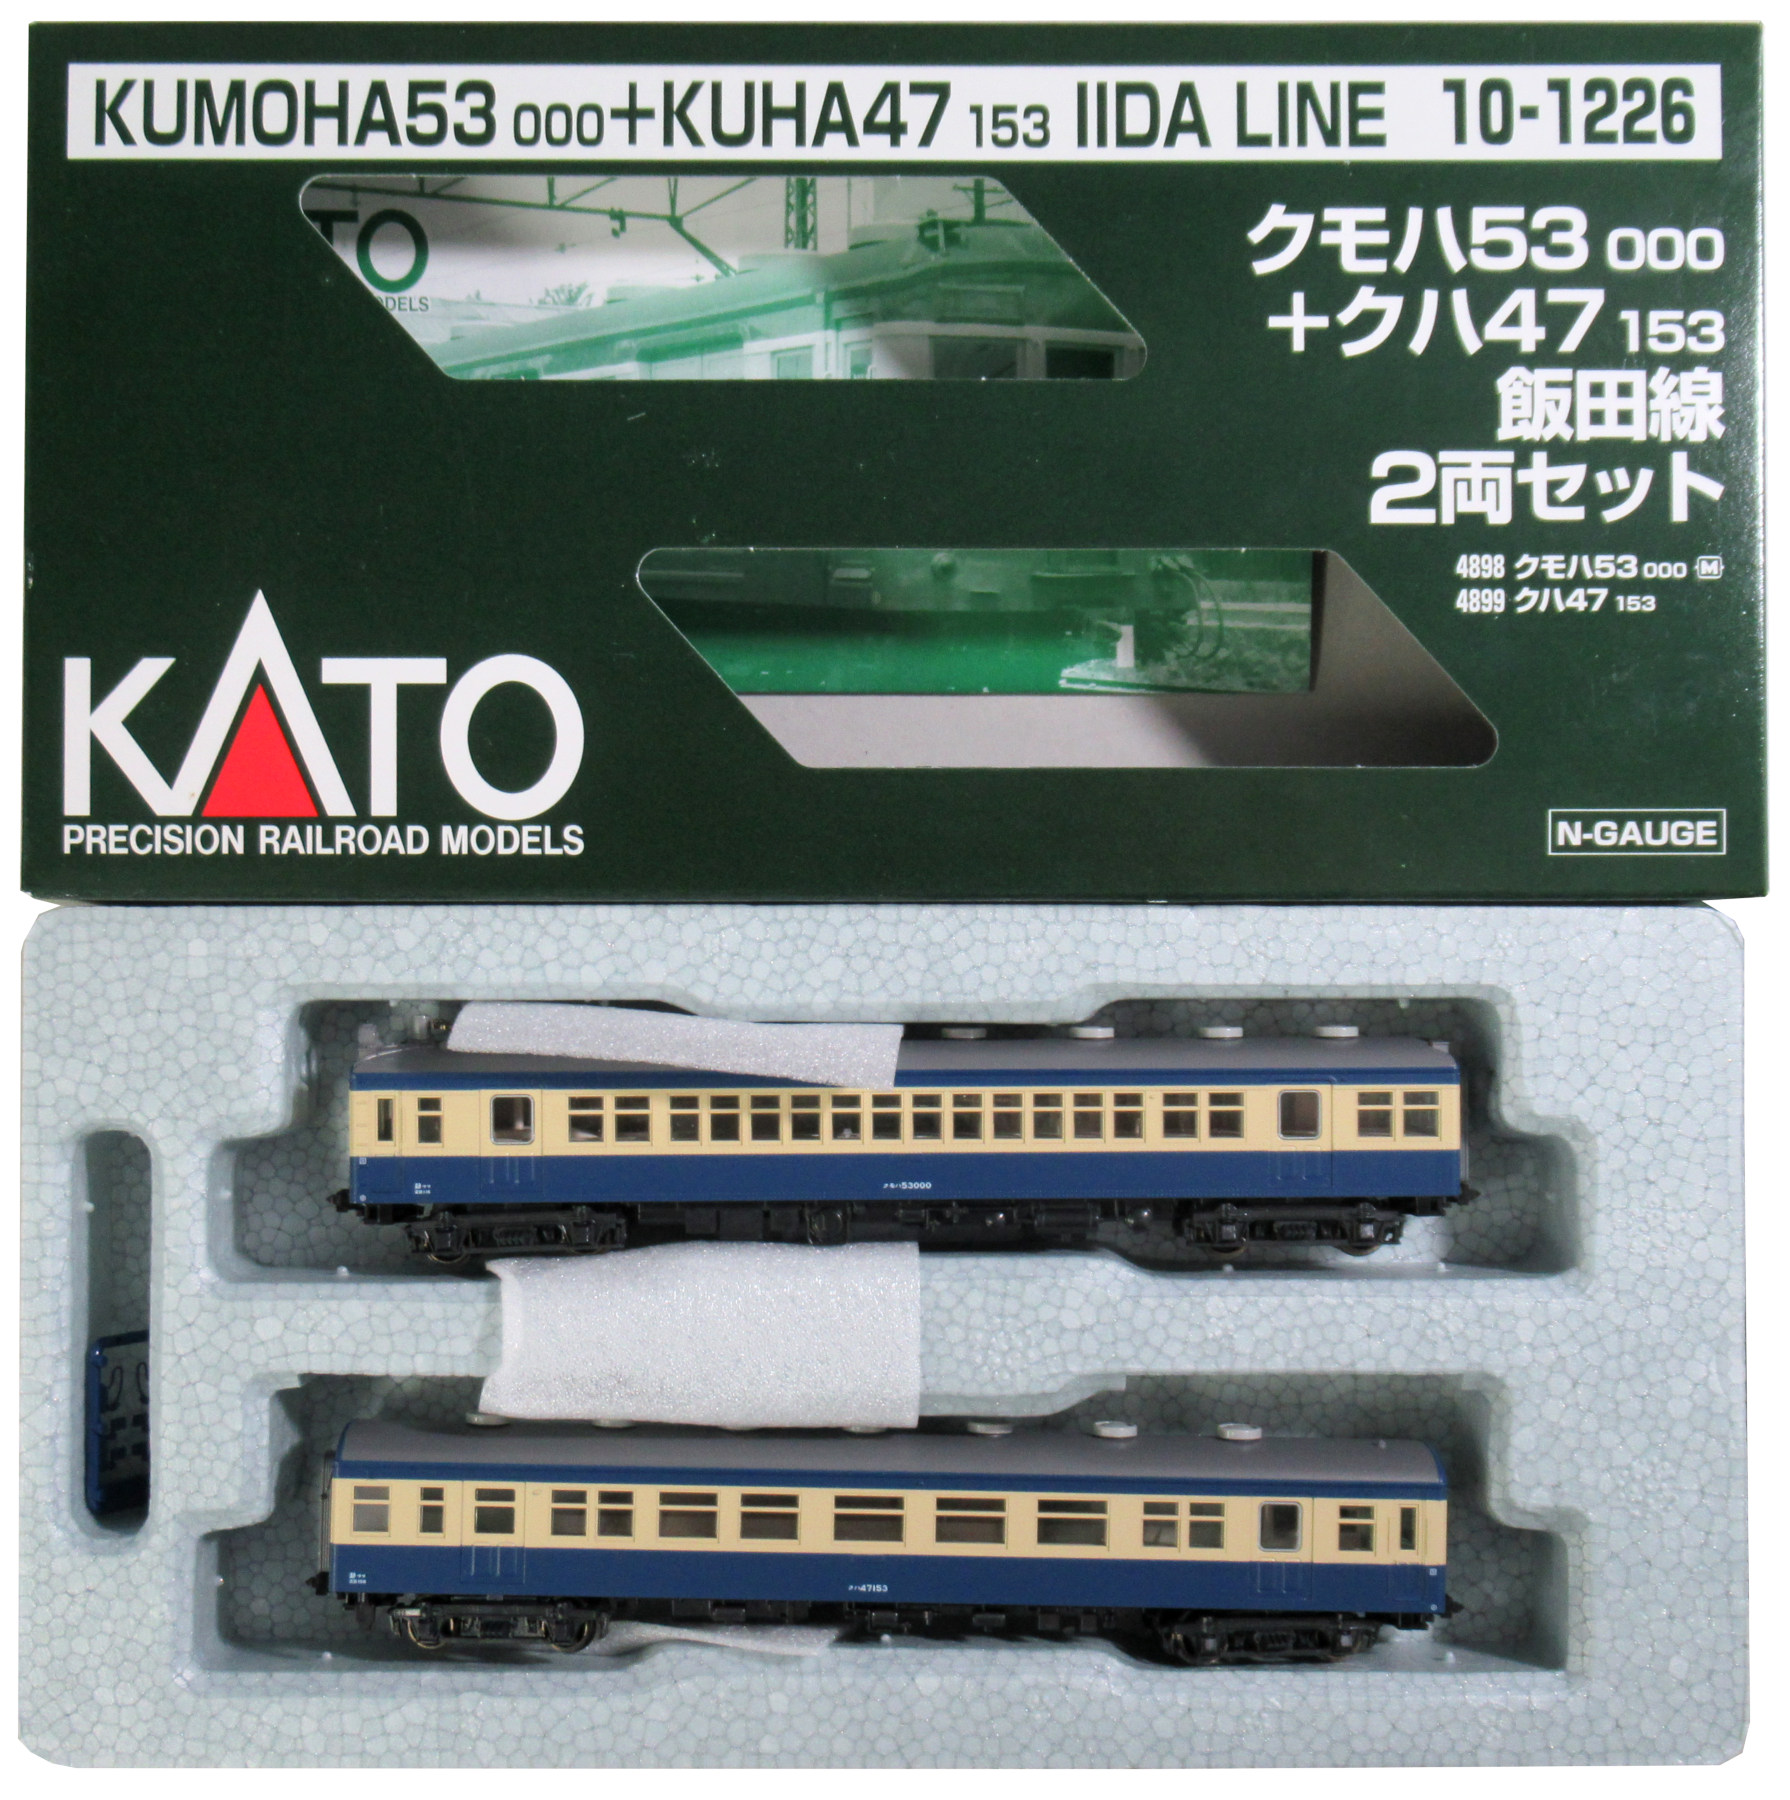 KATO Nゲージ クモハ53000+クハ47153 飯田線 2両セット 10-1226 鉄道